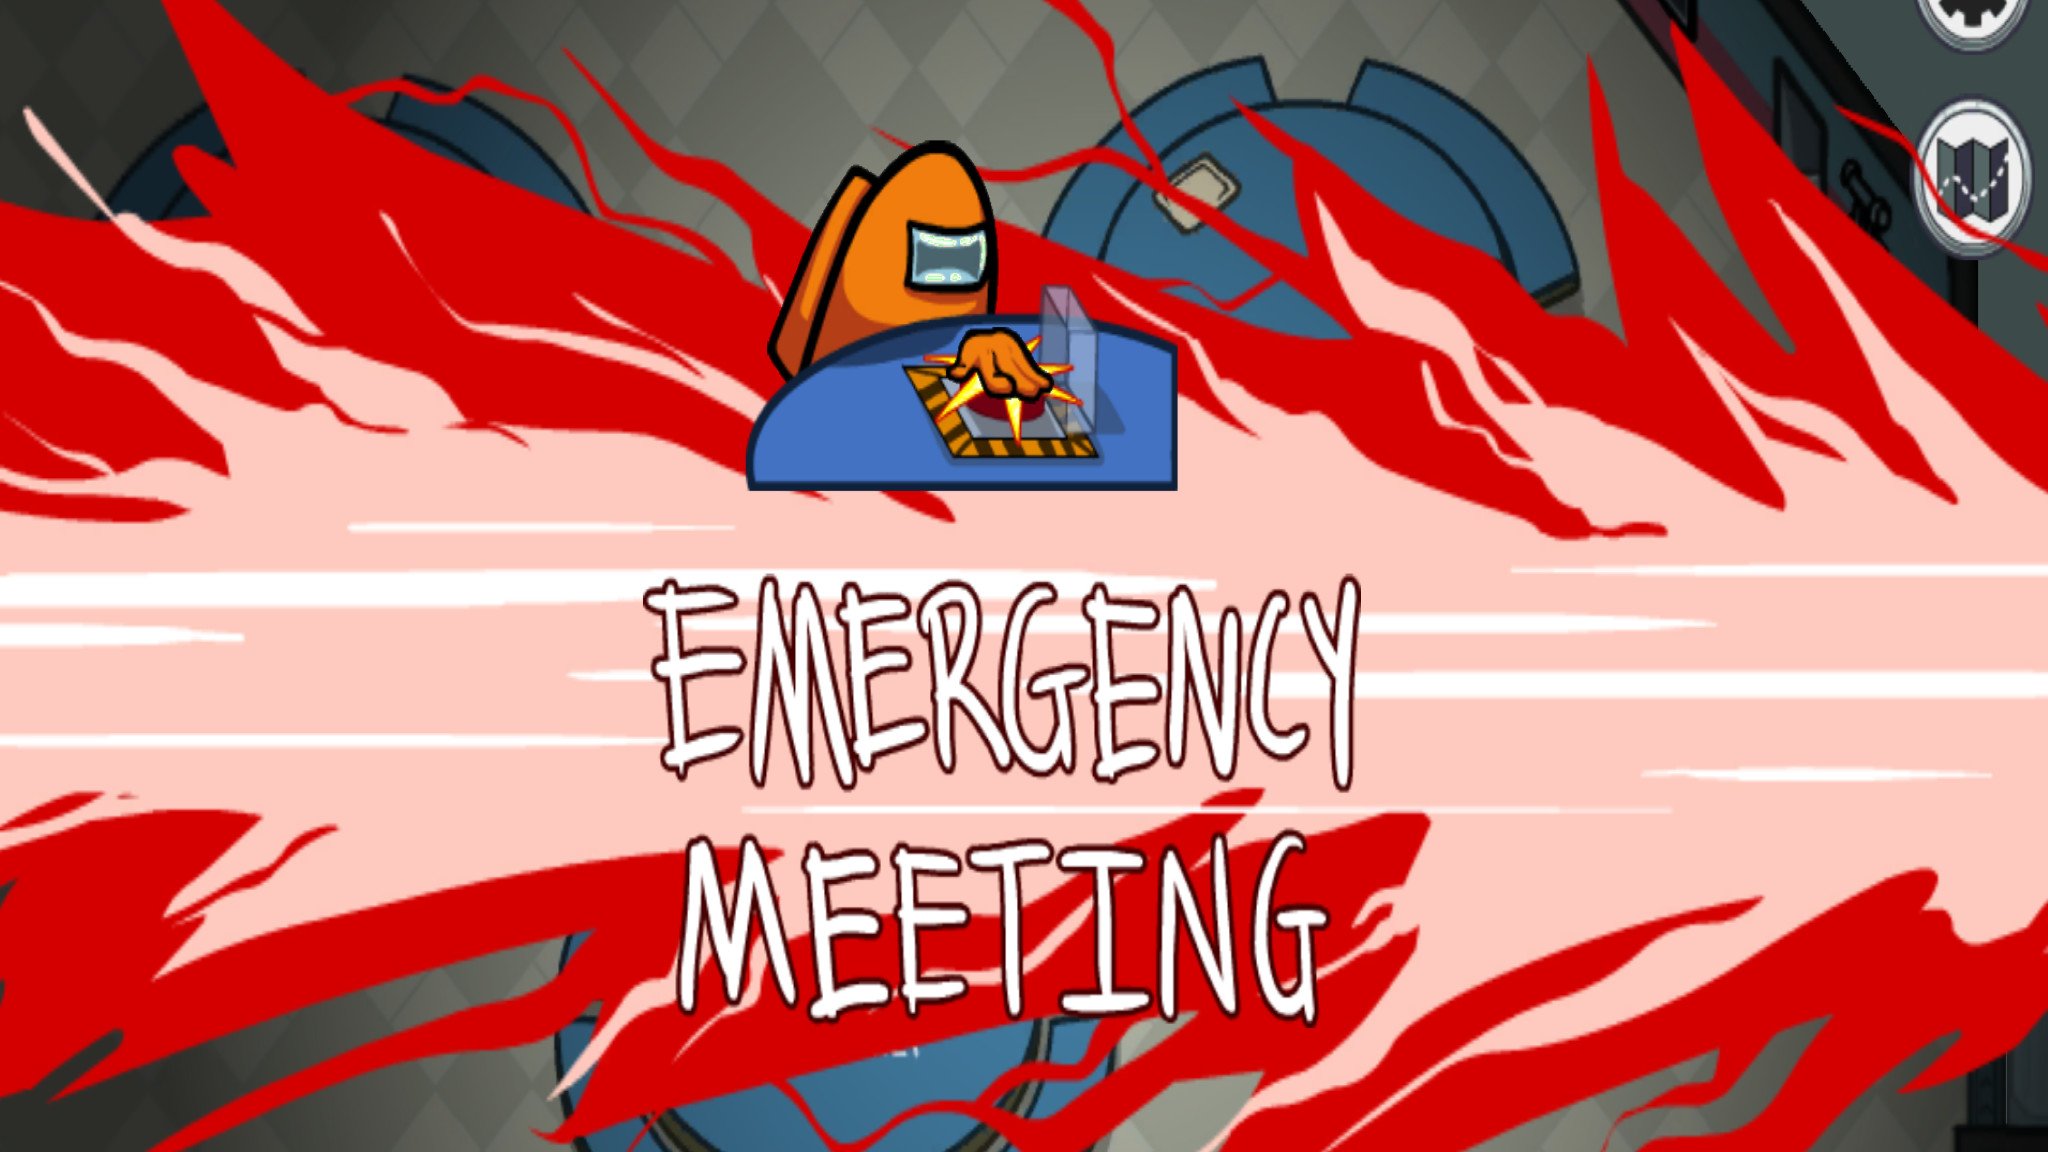 among-us-emergency-meeting-7oe6.jpg